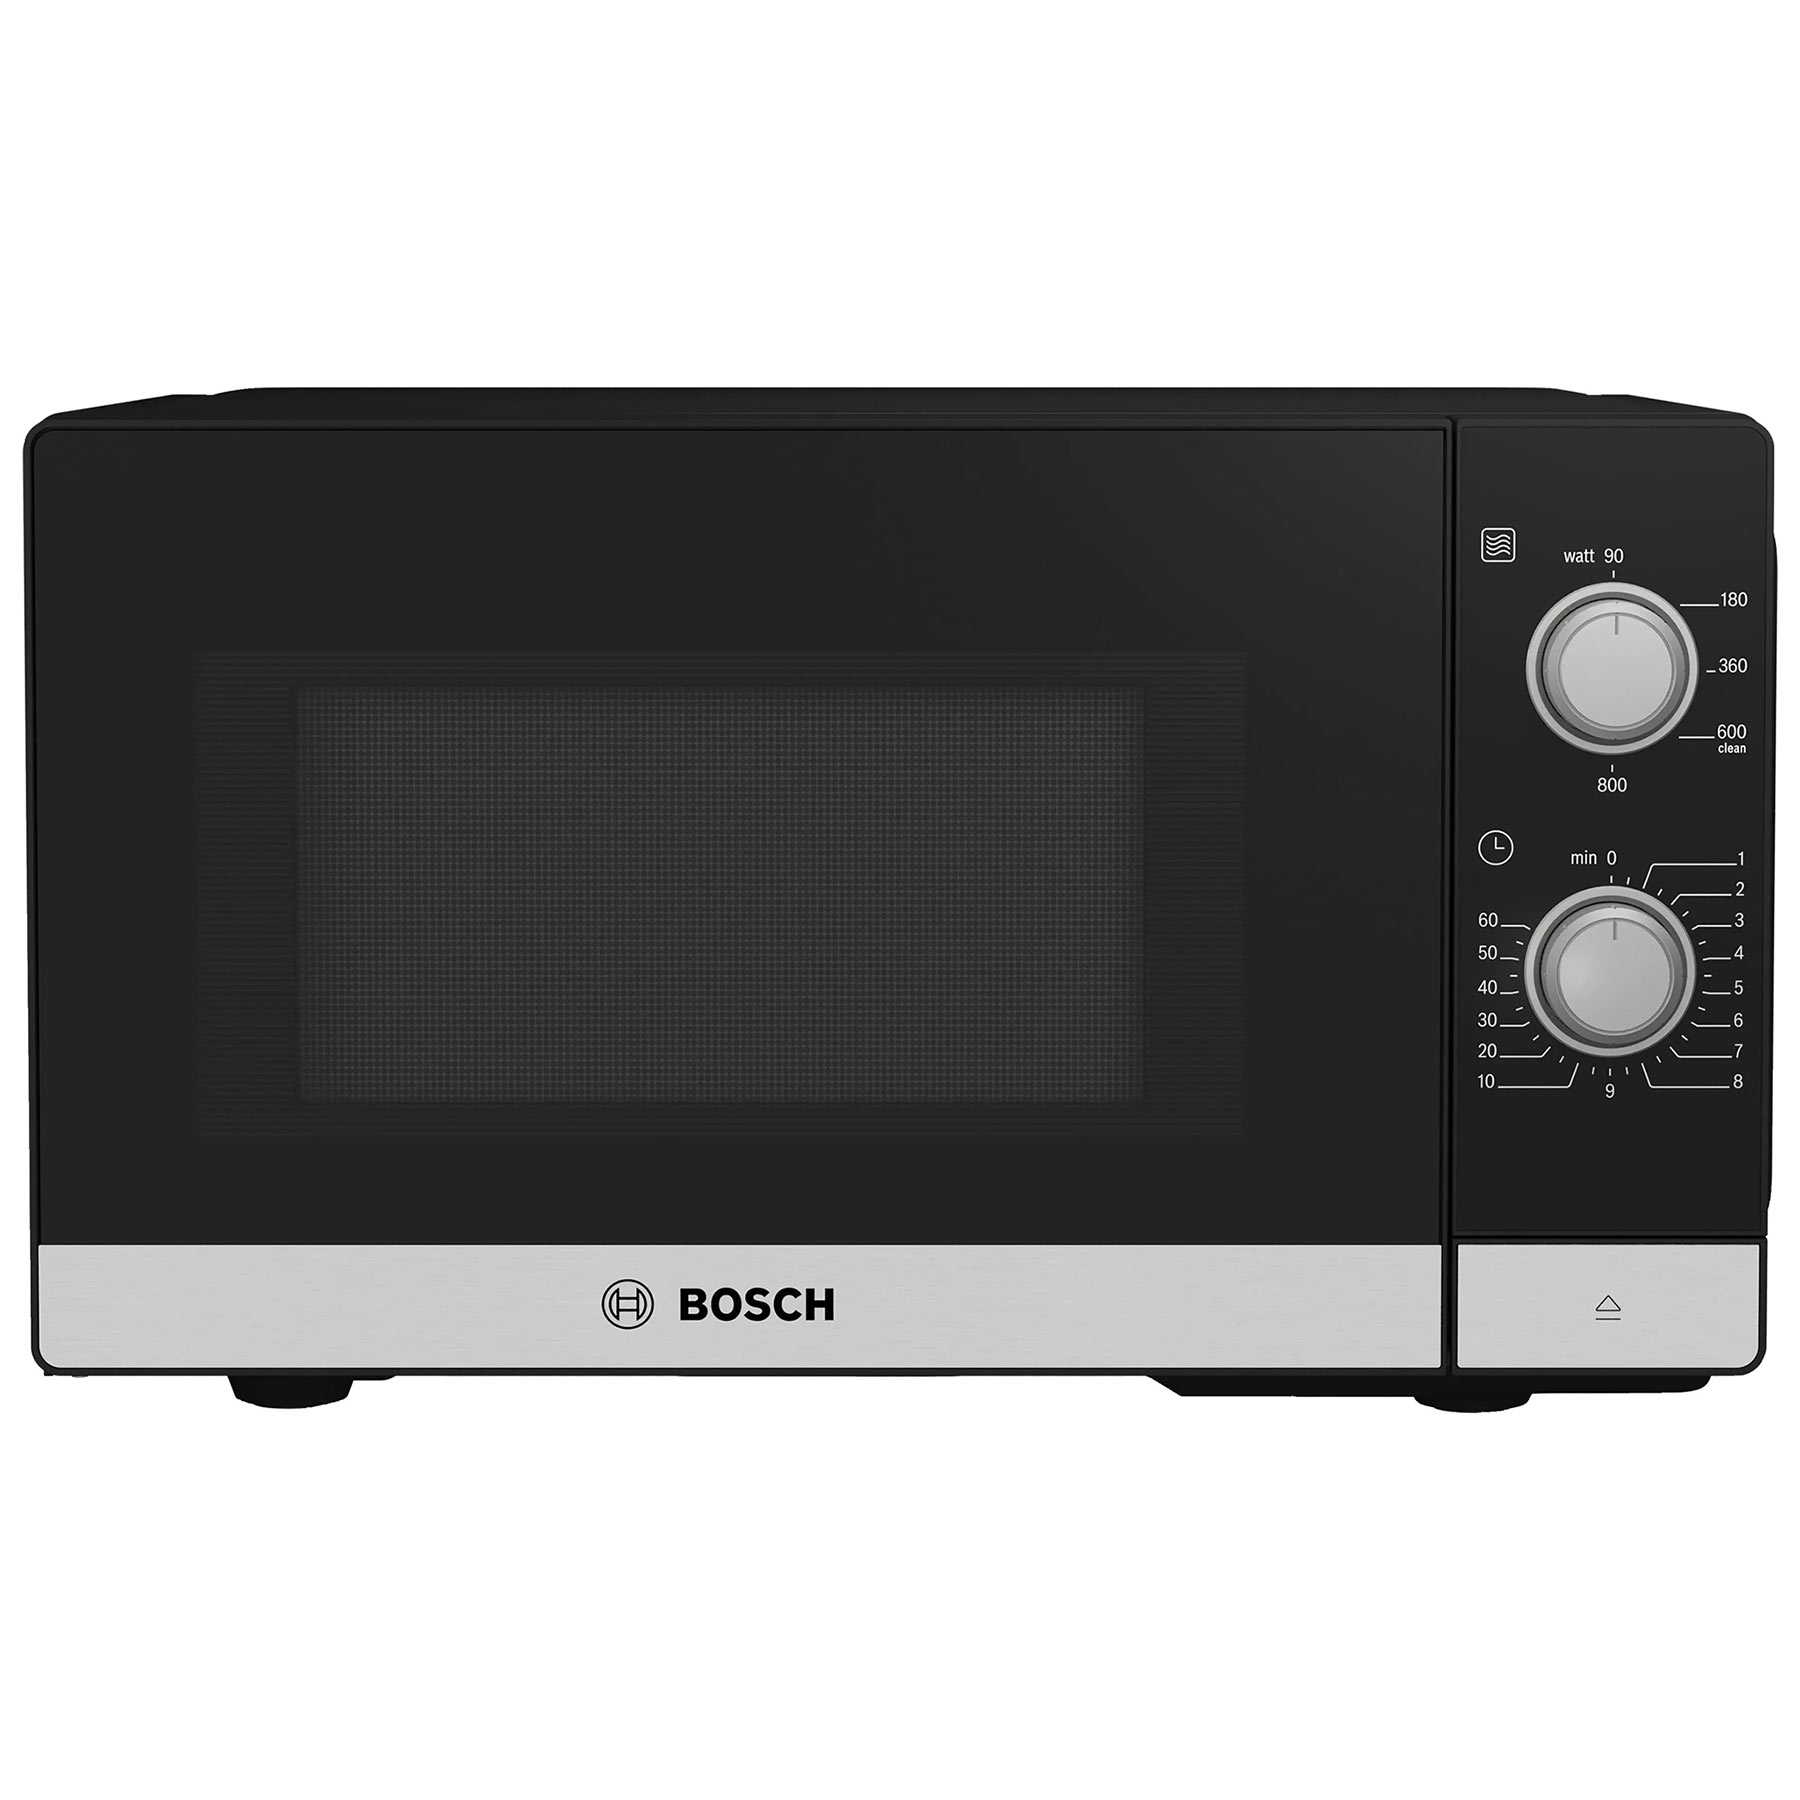 Bosch FFL020MS2B Series 2 Solo Microwave Oven in St Steel 20L 800W